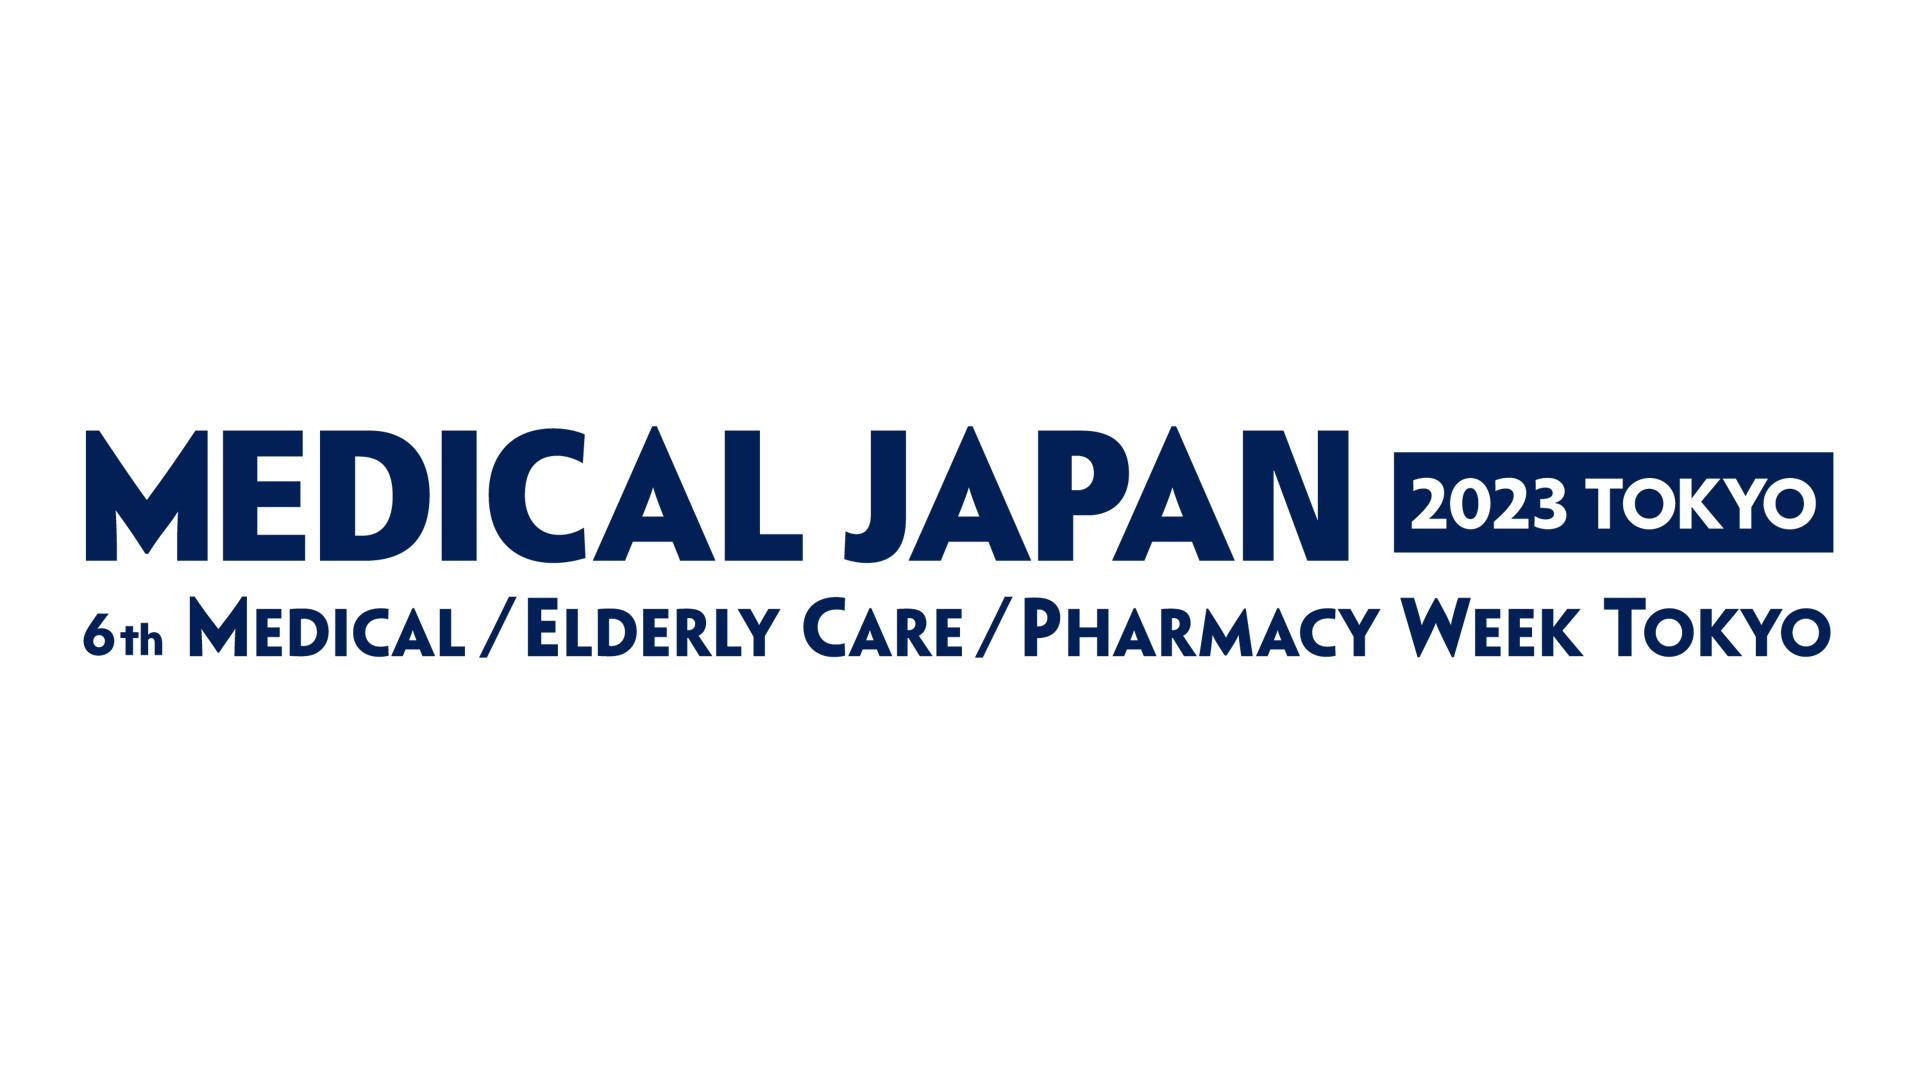 MEDICAL JAPAN 2023 TOKYO, Chiba-city, Kanto, Japan